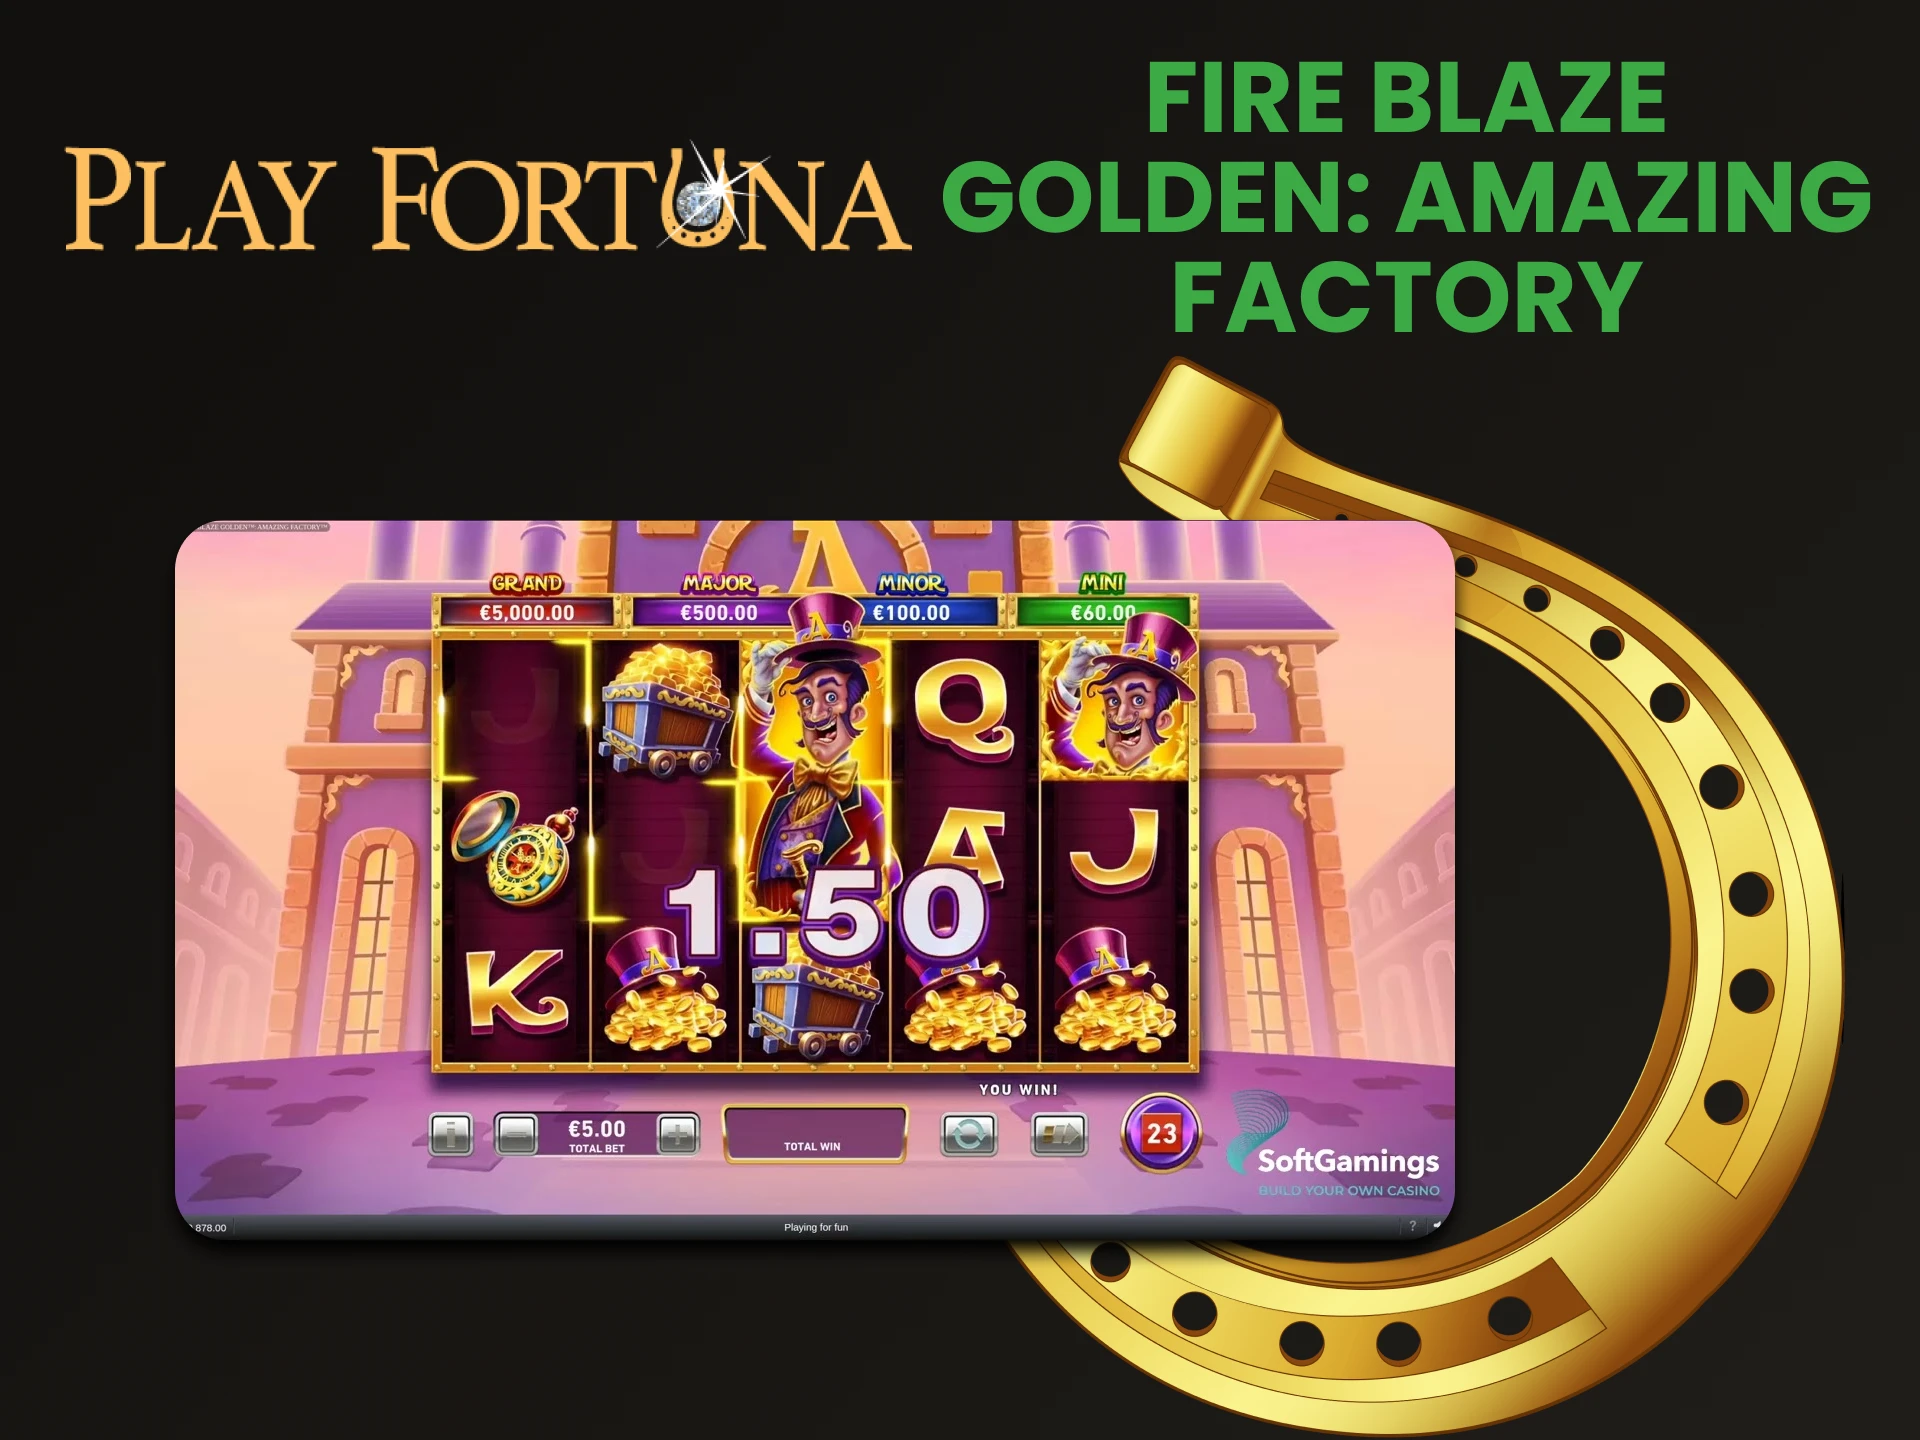 Para jogos de jackpot no Play Fortuna, escolha Fire Blaze Golden.